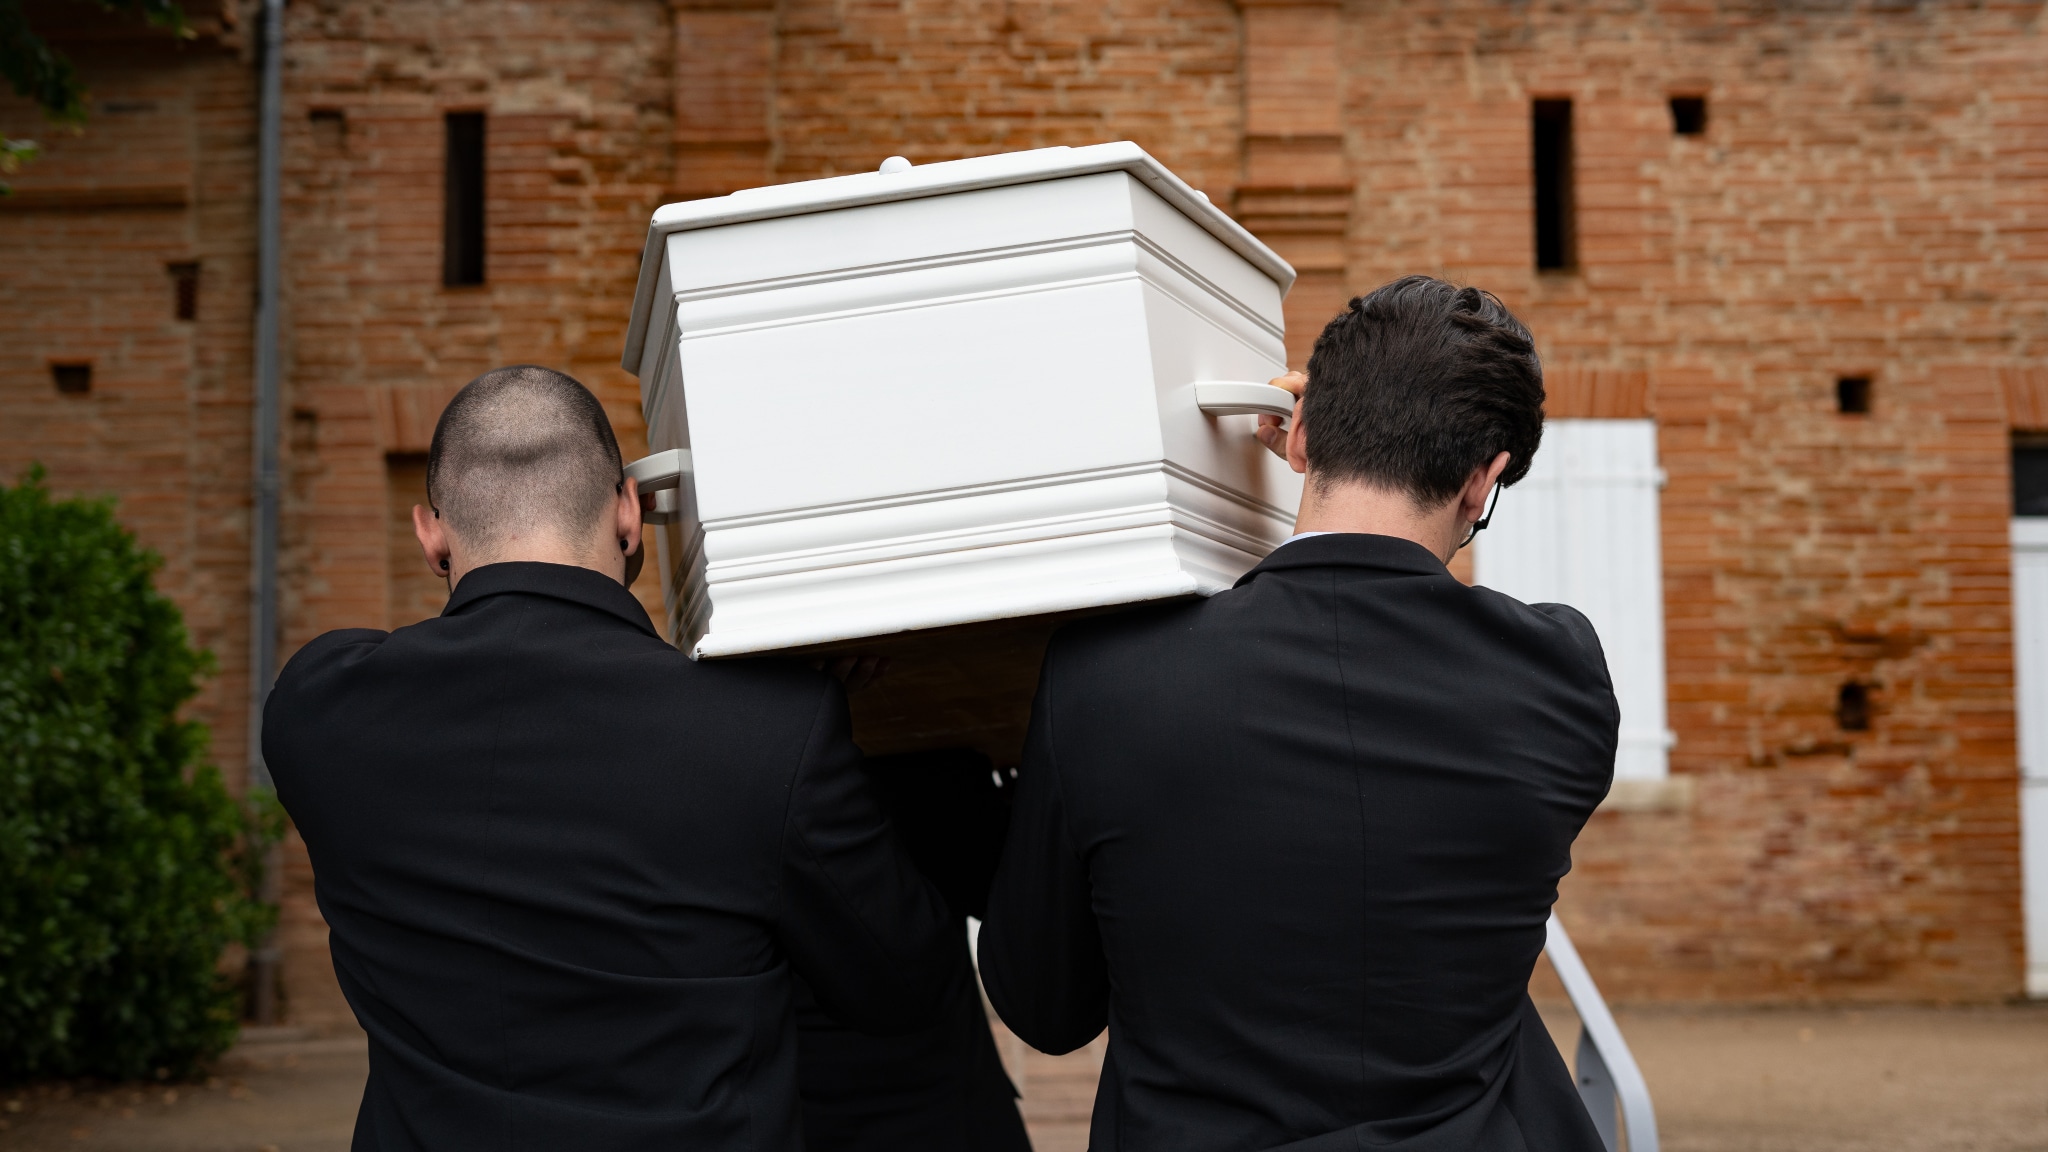 pompes funèbres gimenez cérémonie d'enterrement marche funèbre cercueil porteurs